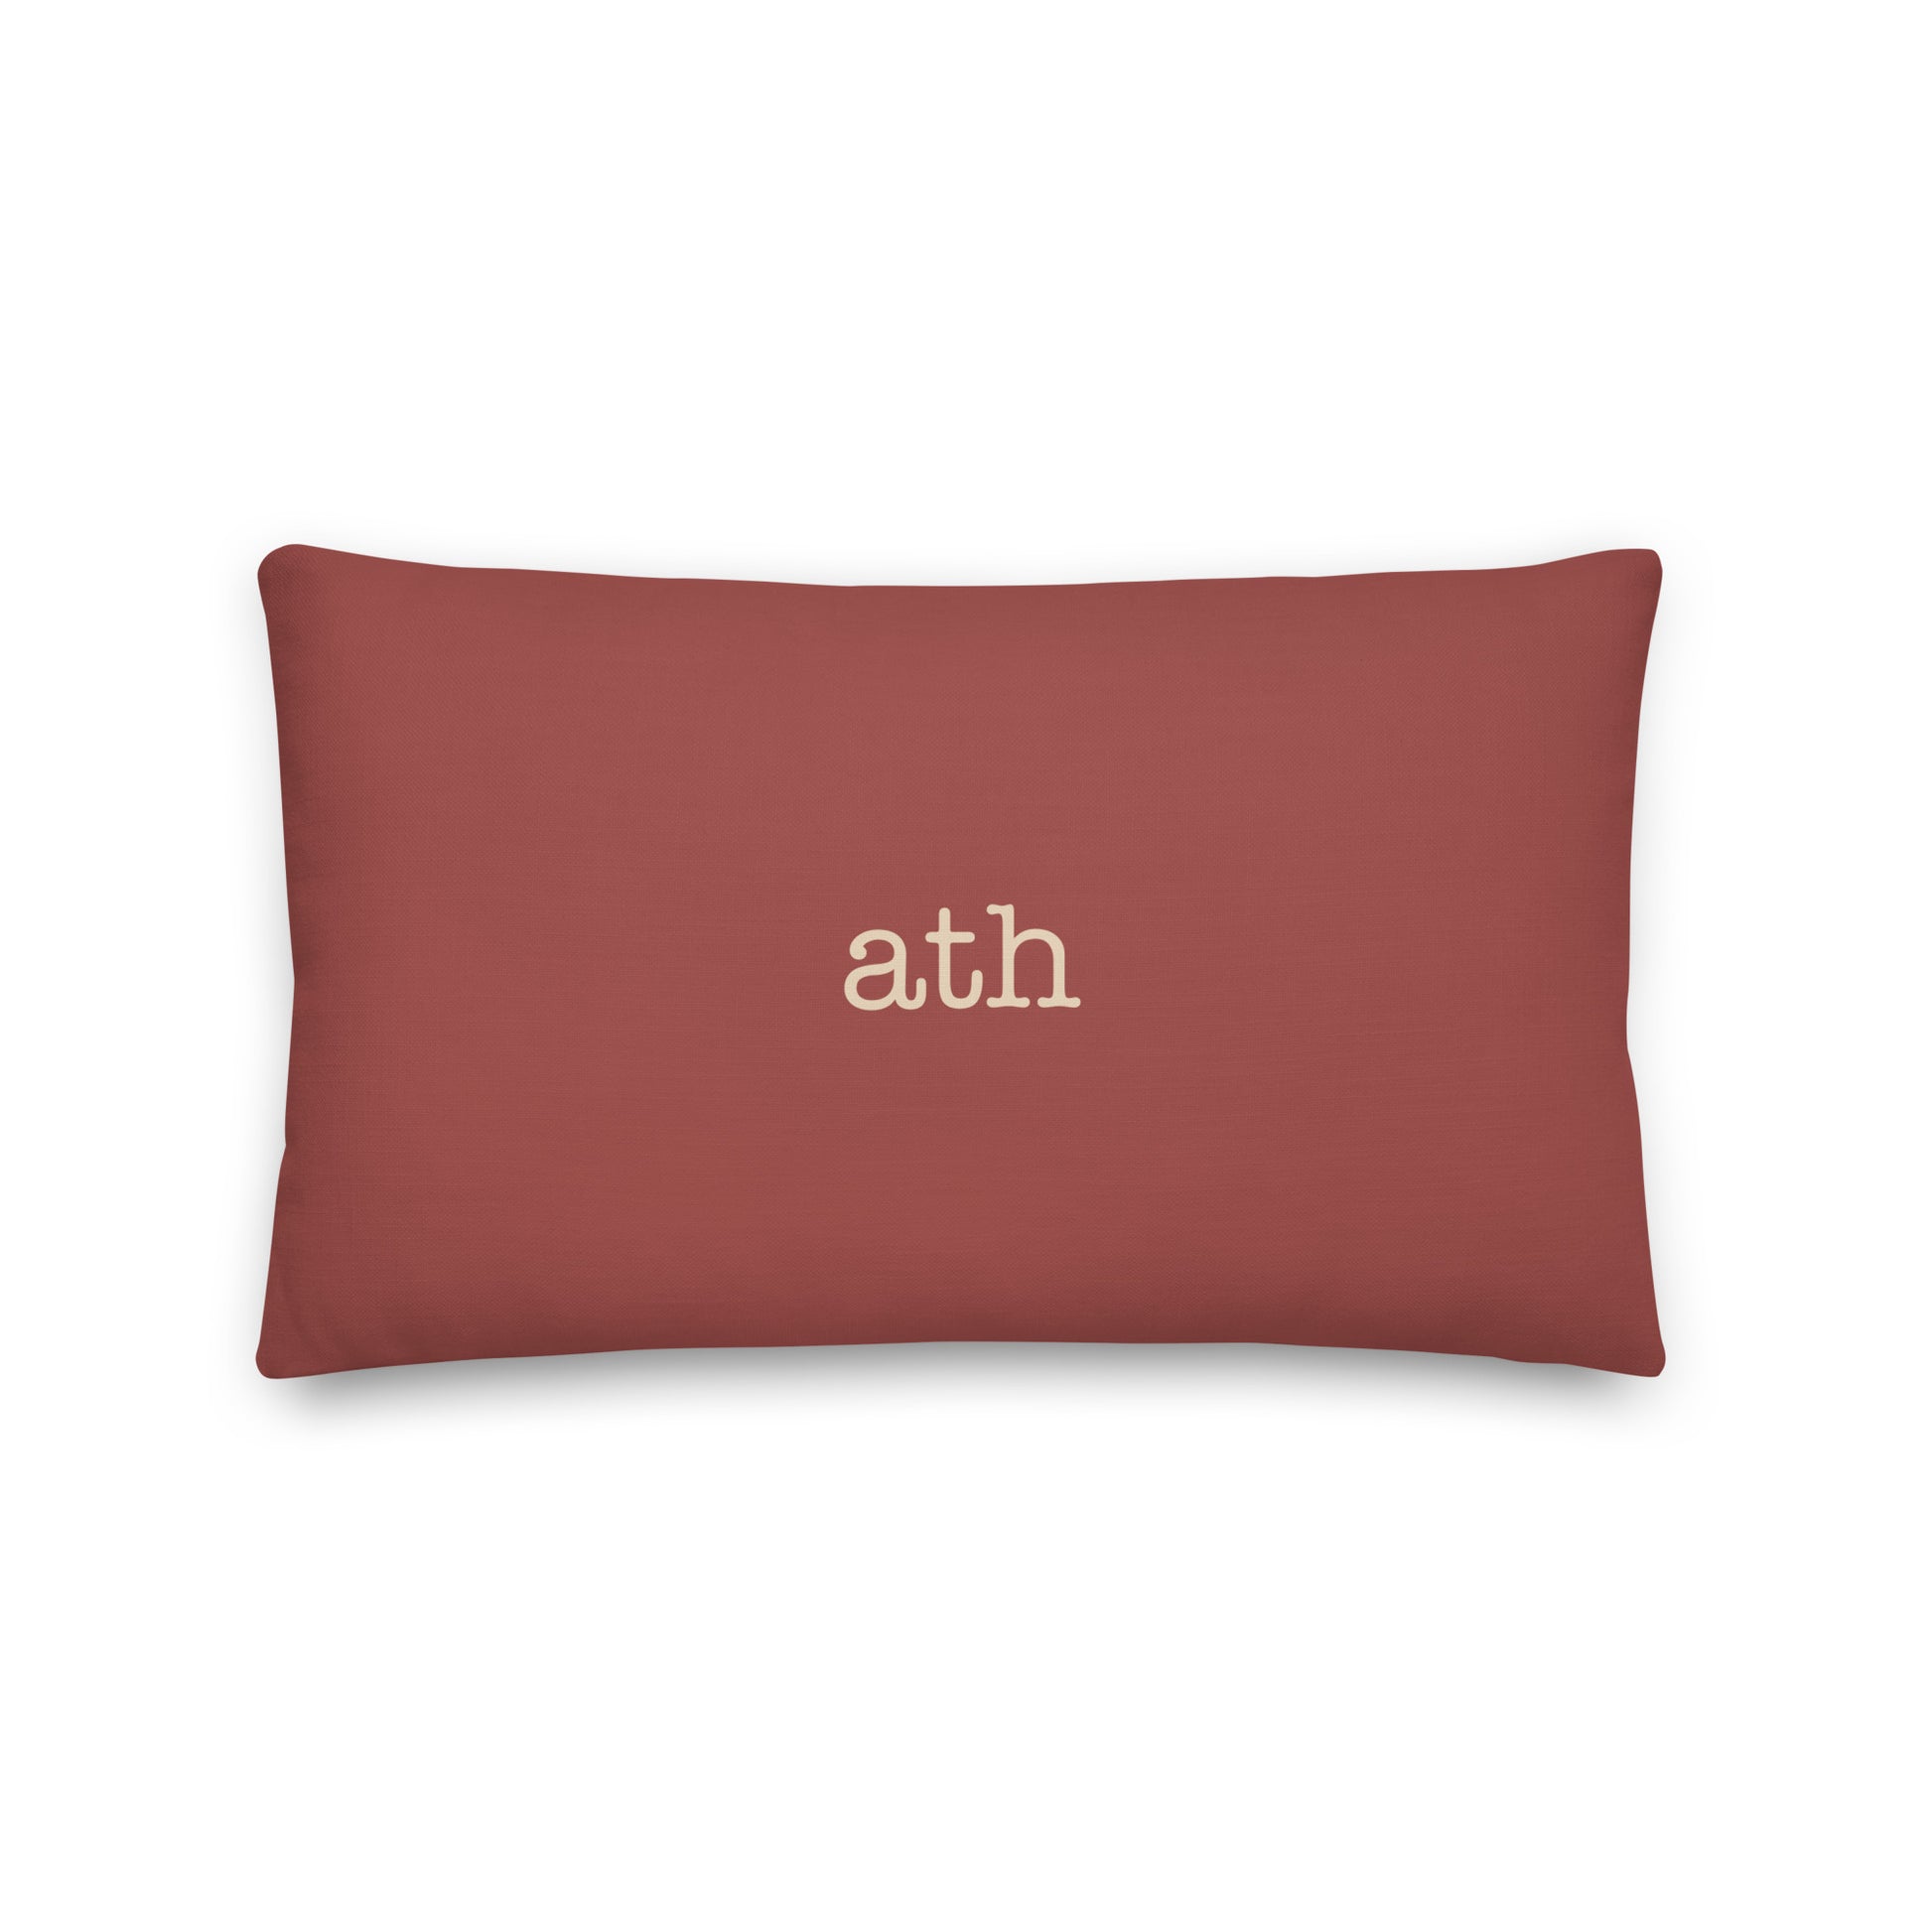 Typewriter Pillow - Terra Cotta • ATH Athens • YHM Designs - Image 02